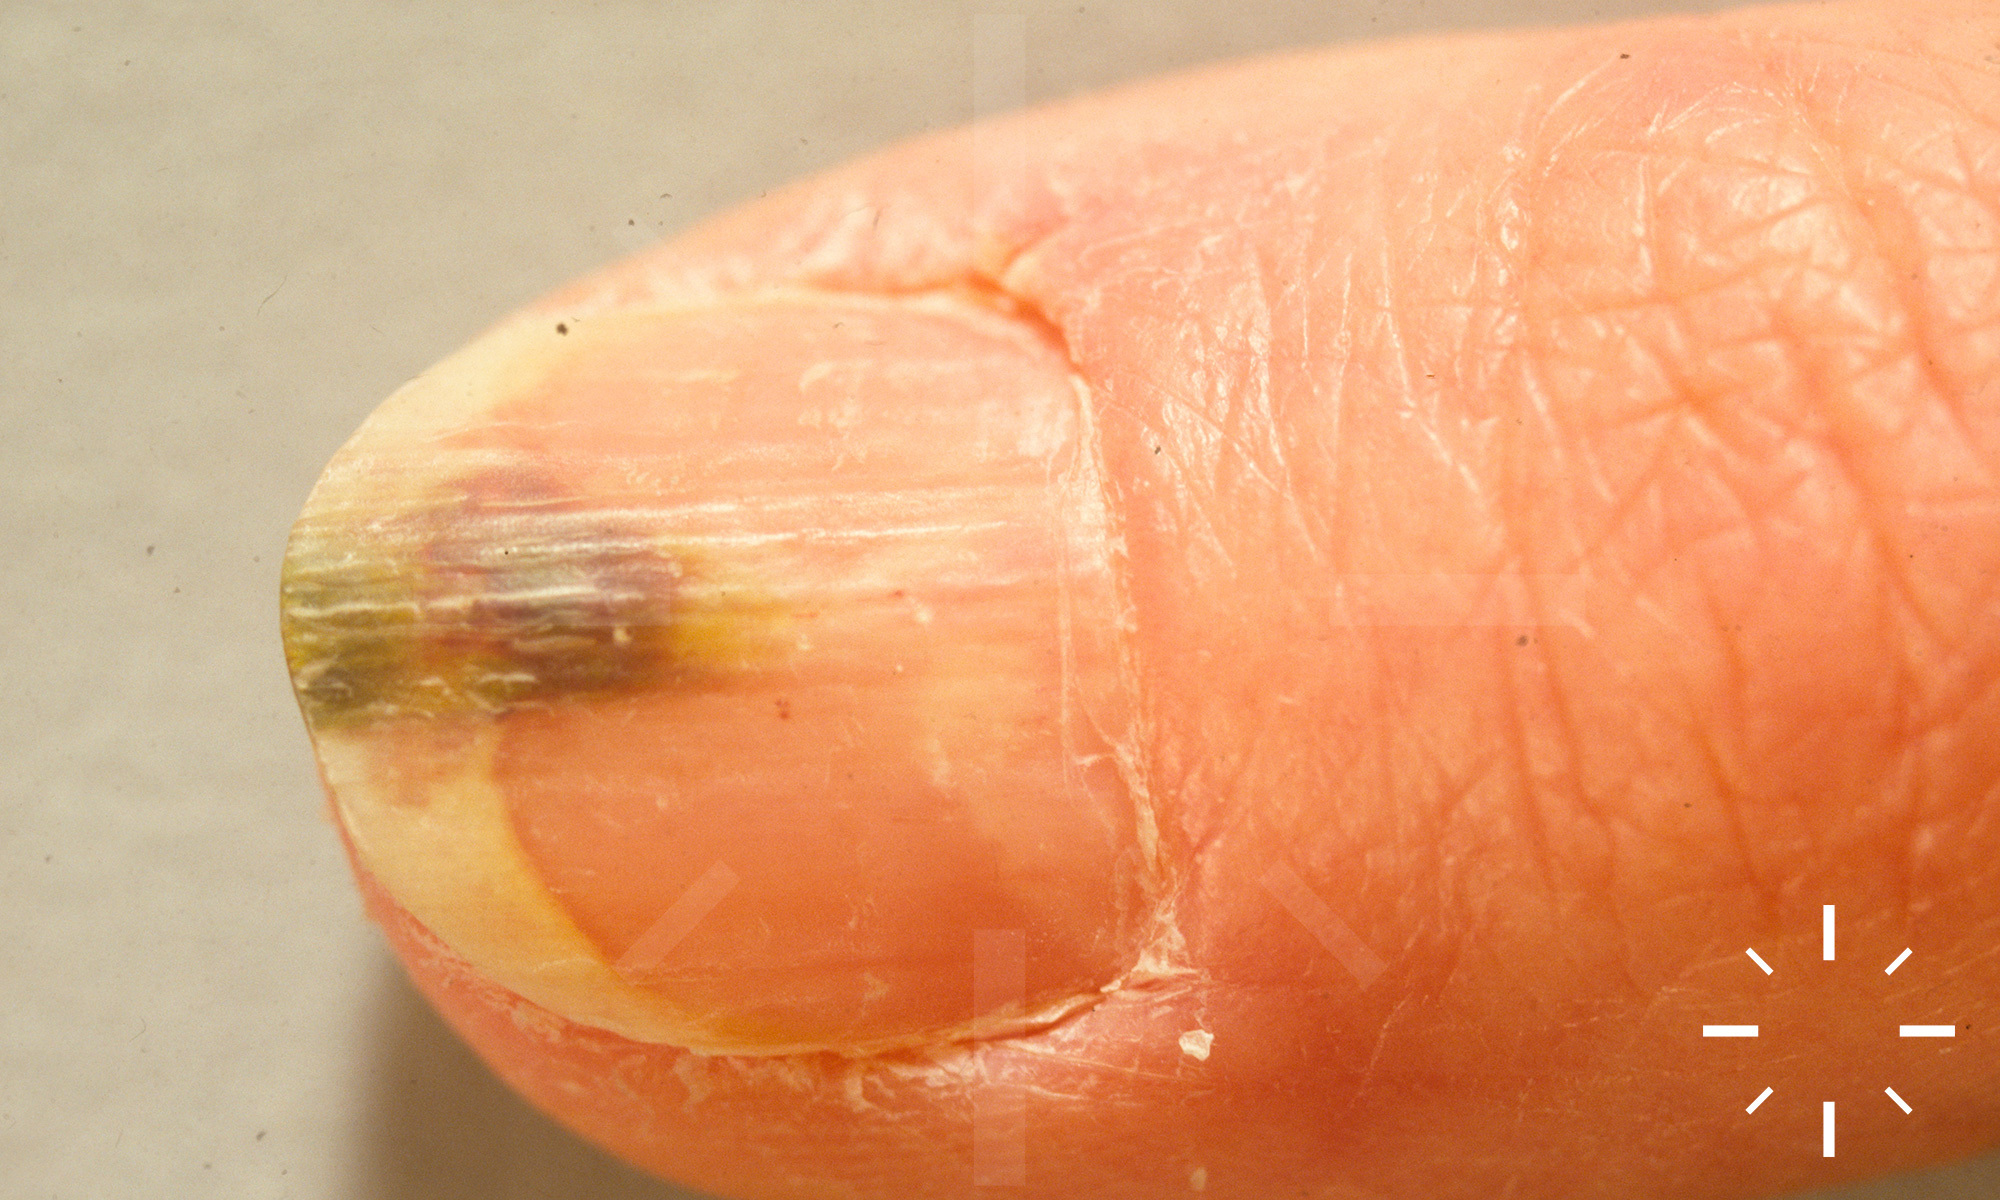 Diseases of Nails | SpringerLink